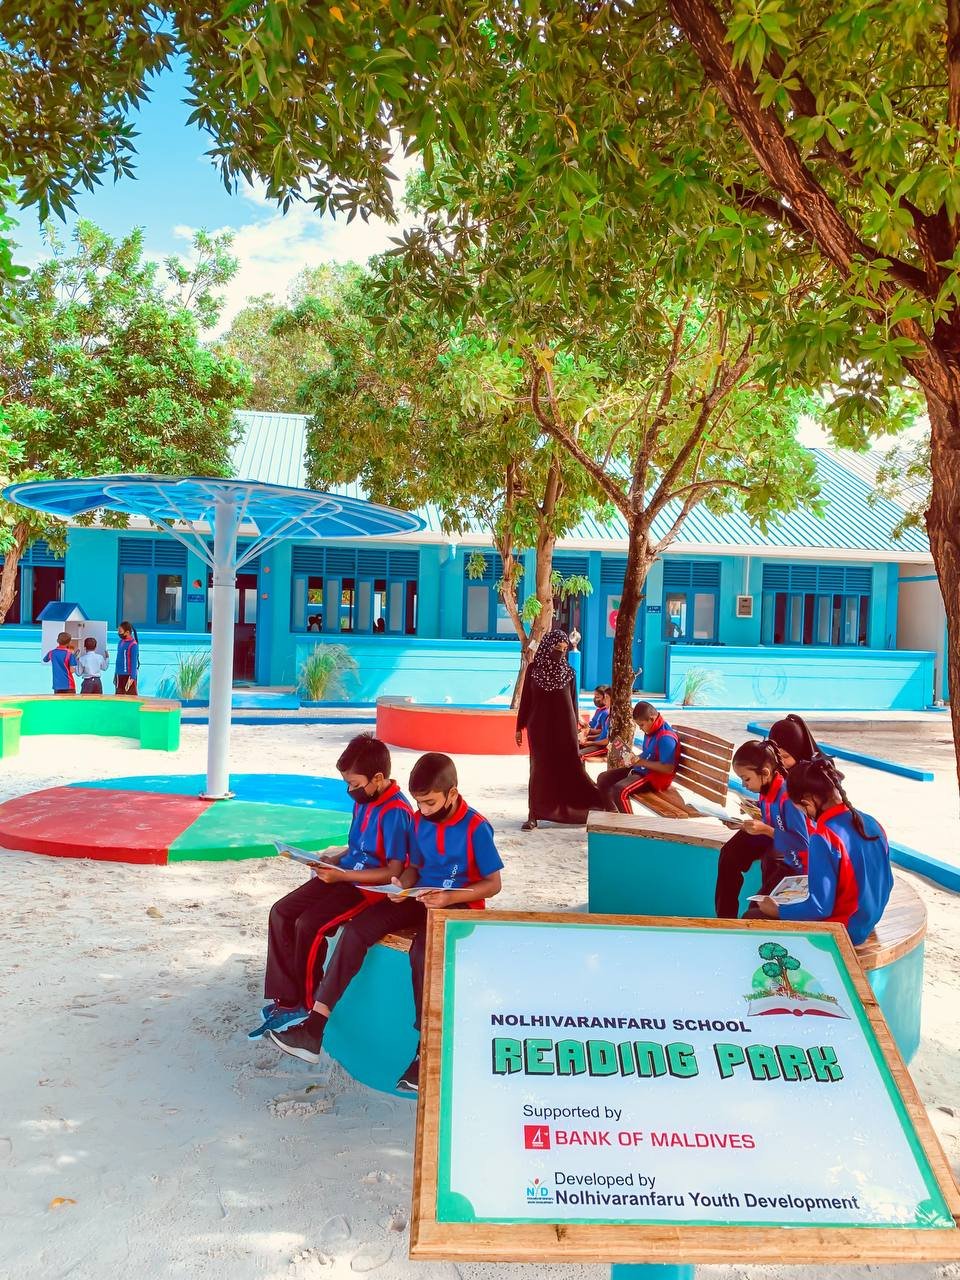 Nolhivaranfaru School gai foi kiumah khaassa reeding park eh gaaimu koffi